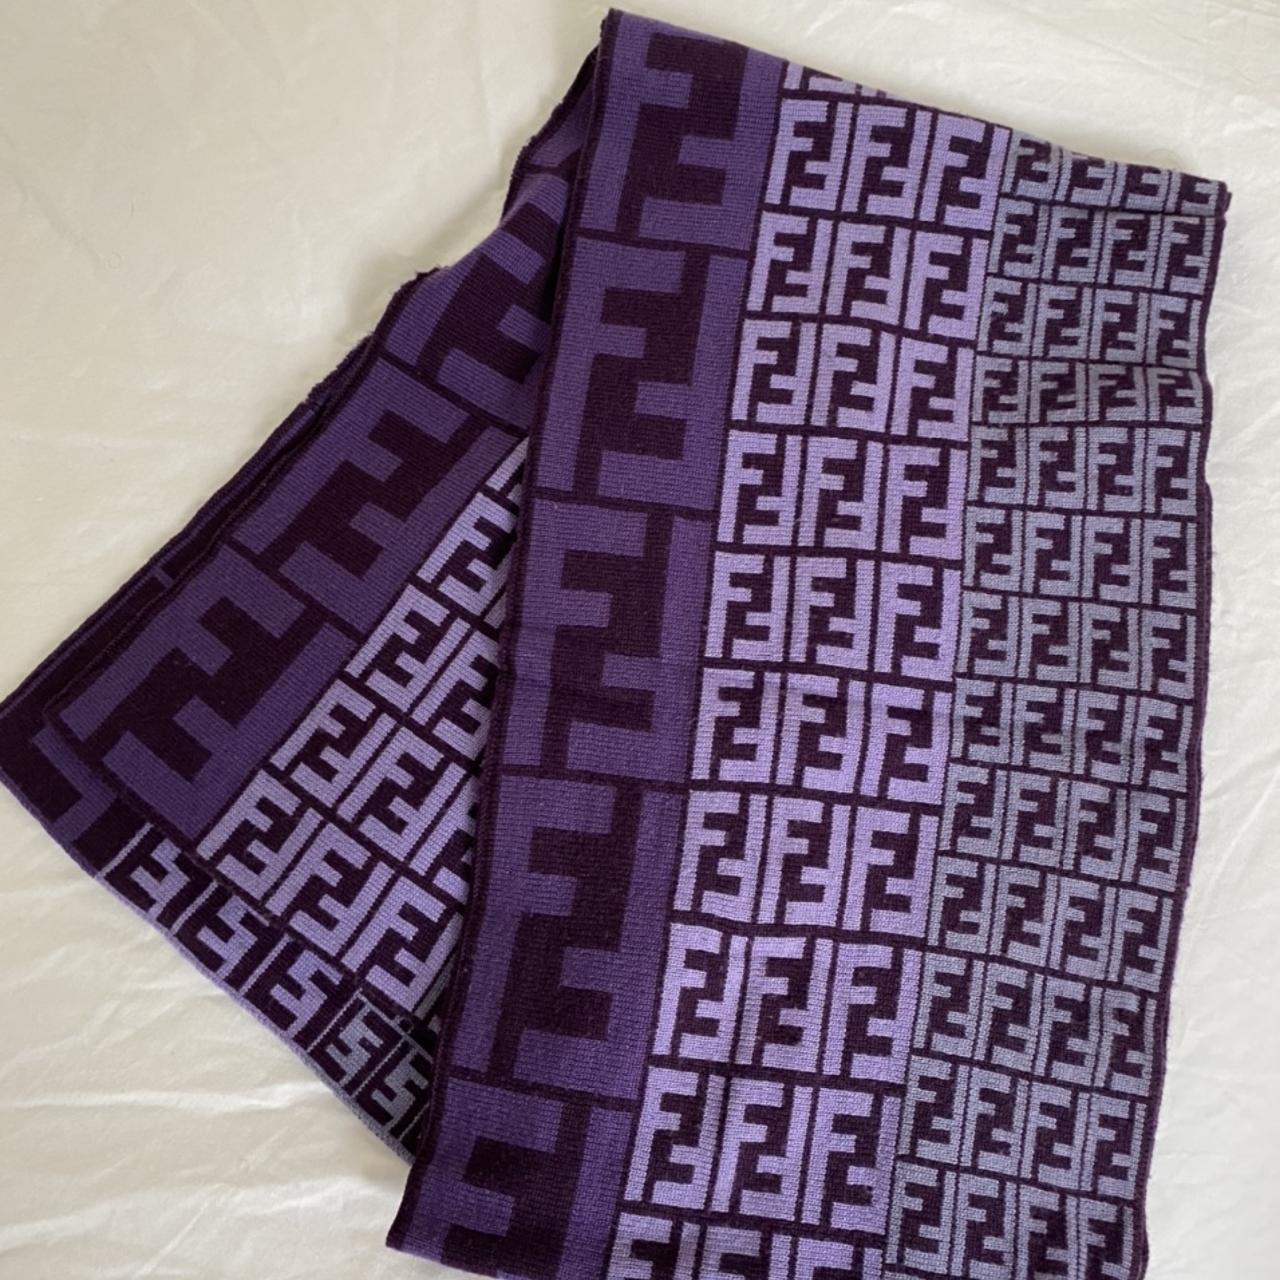 For sale - Fendi Monogram scarf in purple. Very... - Depop